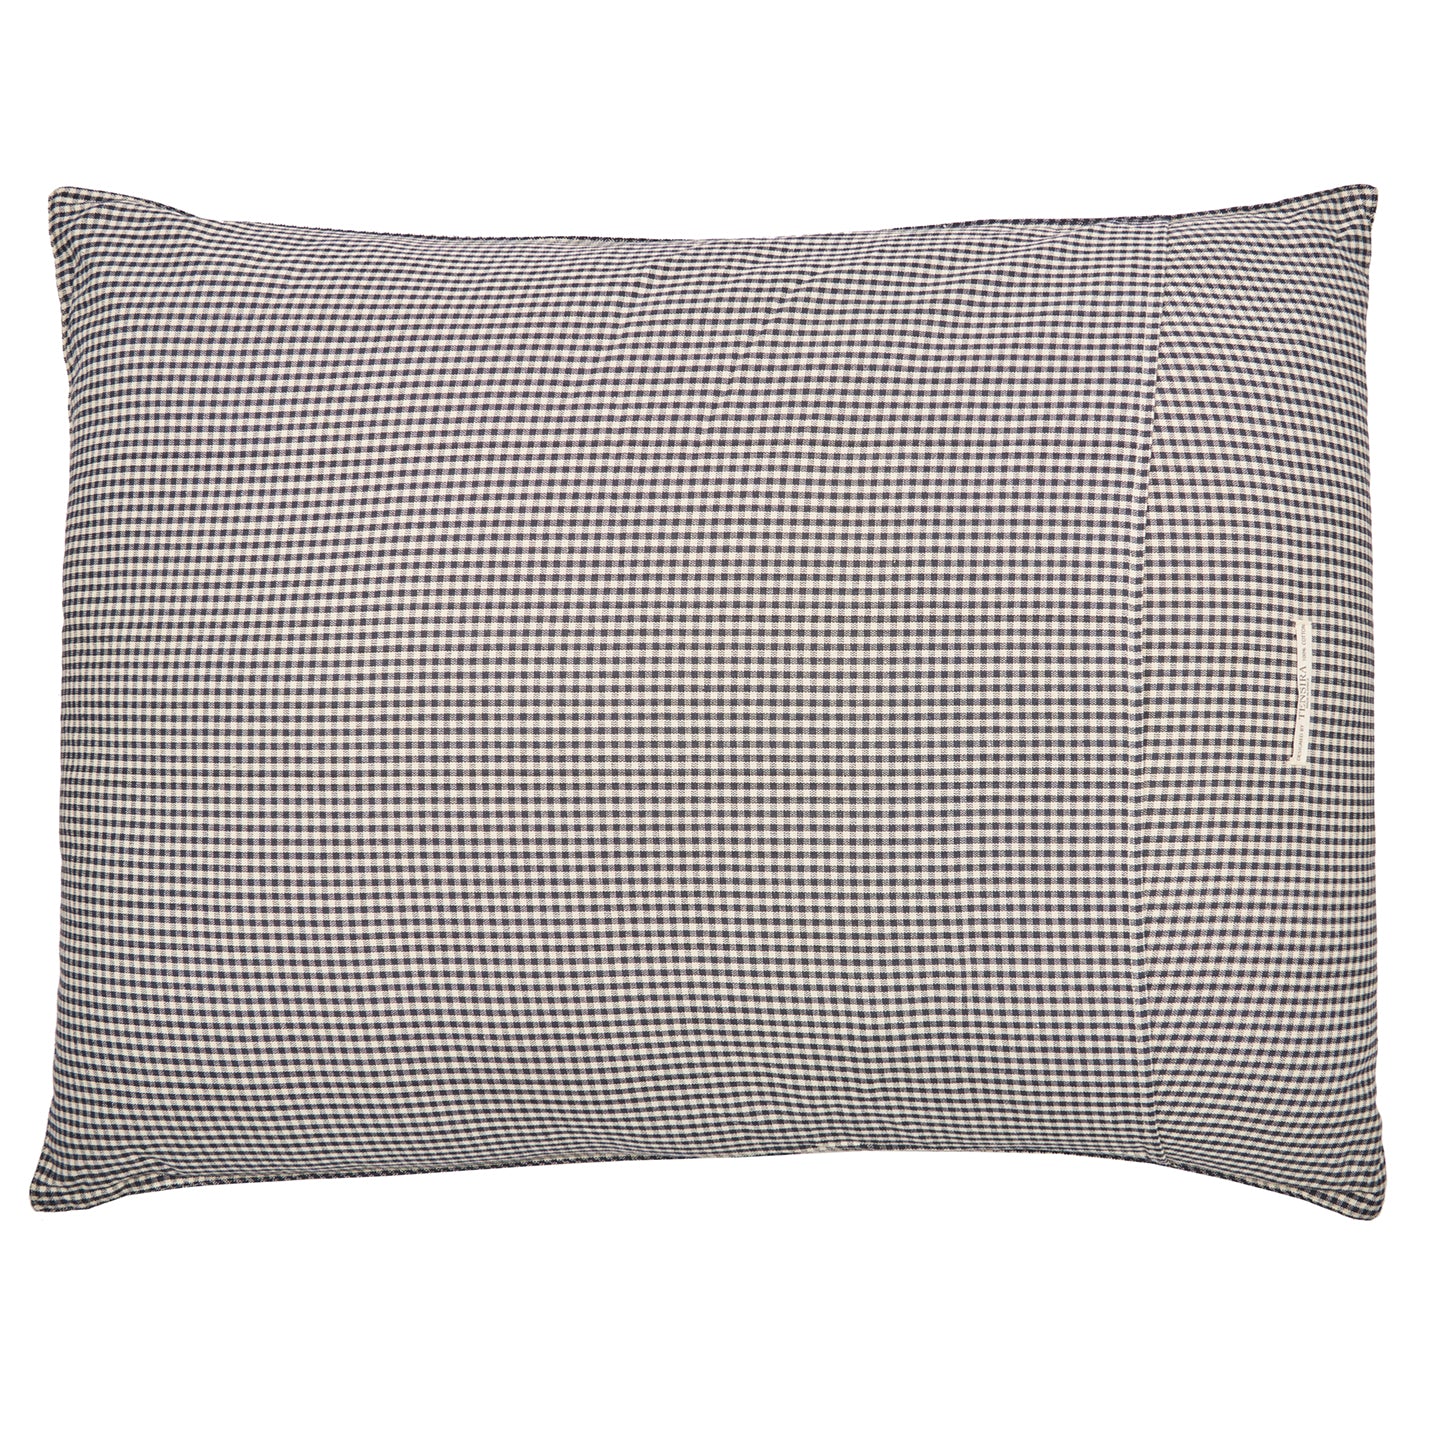 Black and Off-White Gingham Headboard Cushion